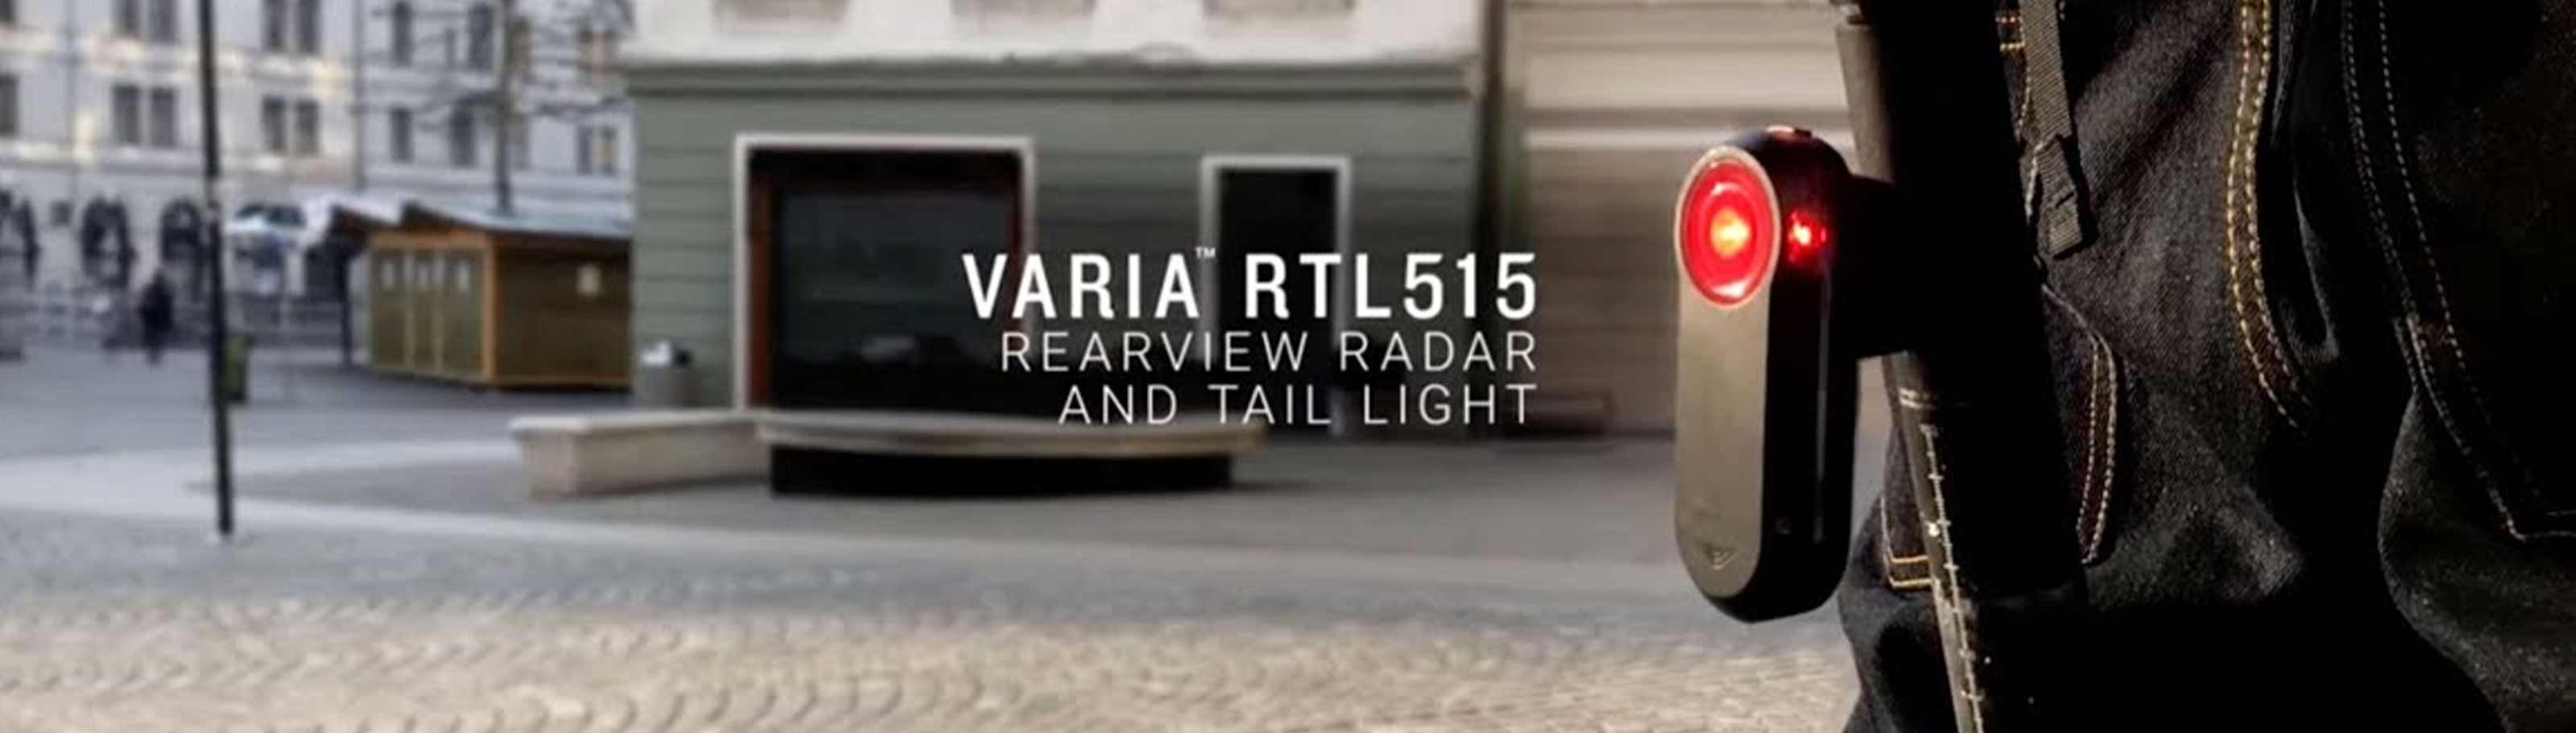 Luz trasera y Radar Varia RTL515 - Tienda Be Quick